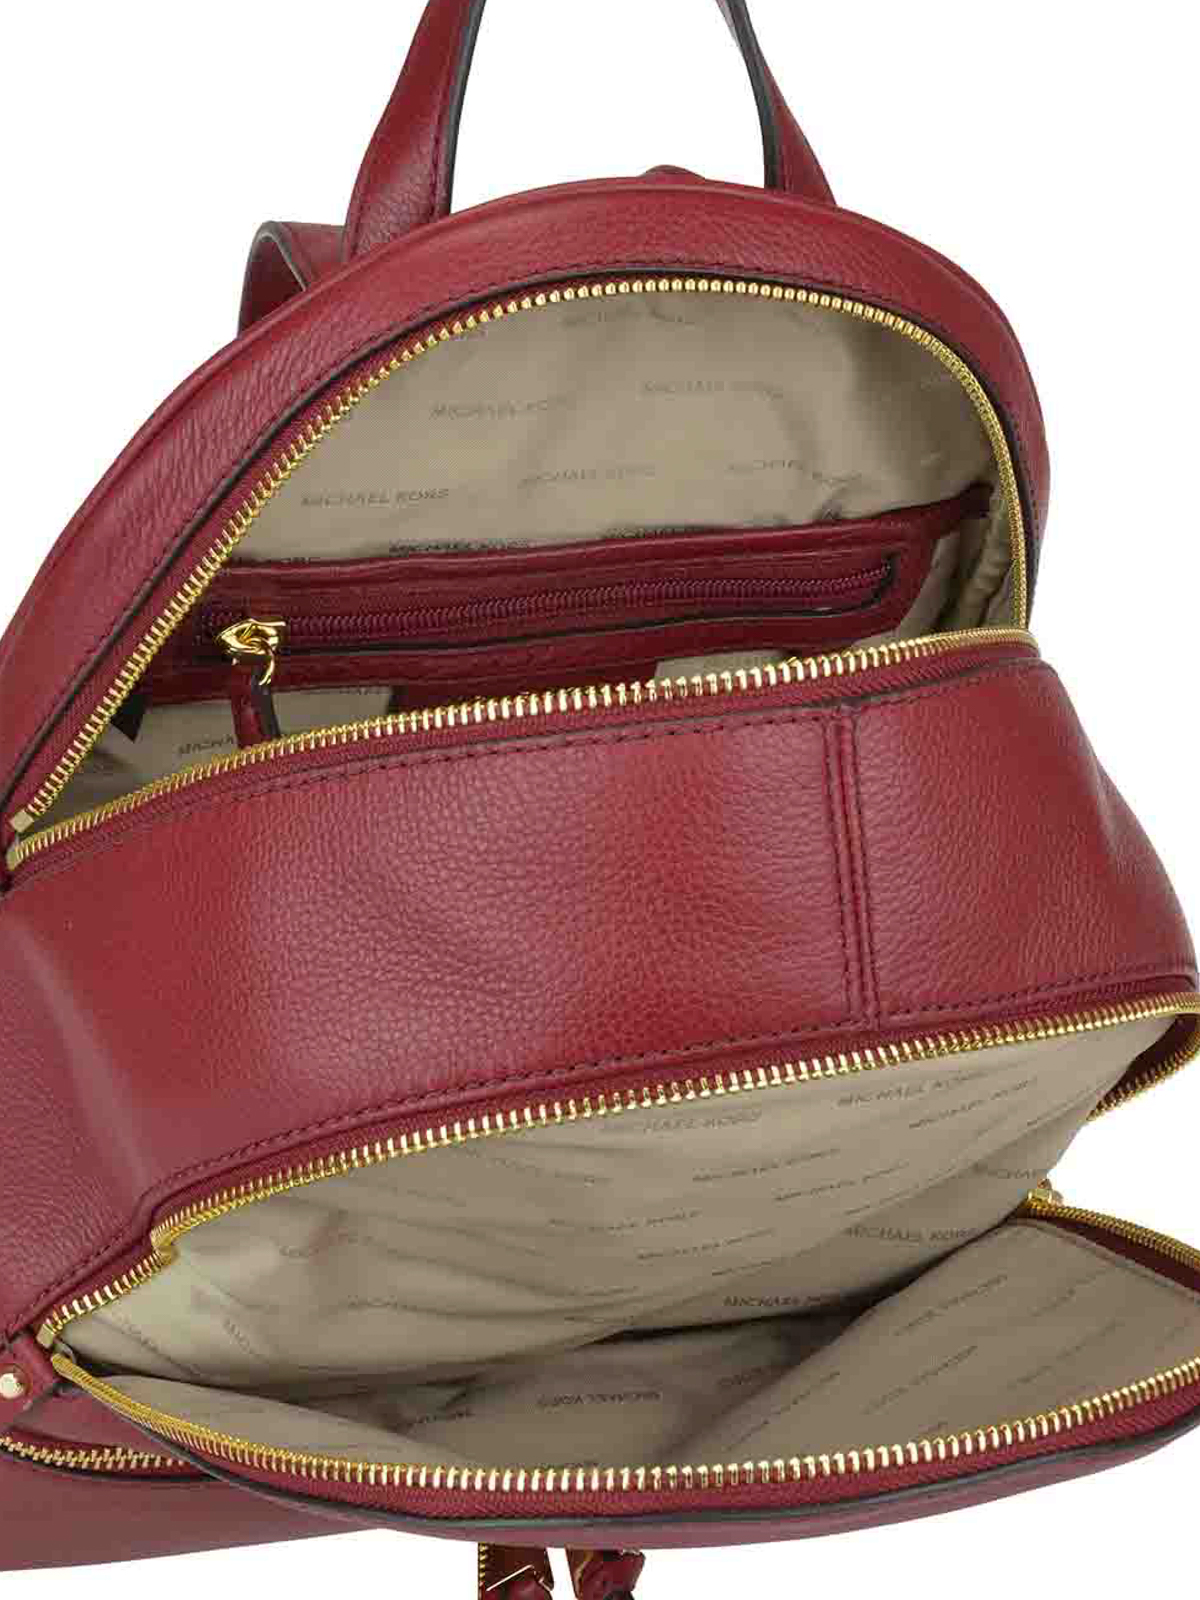 Michael Kors Rhea Backpack - Red